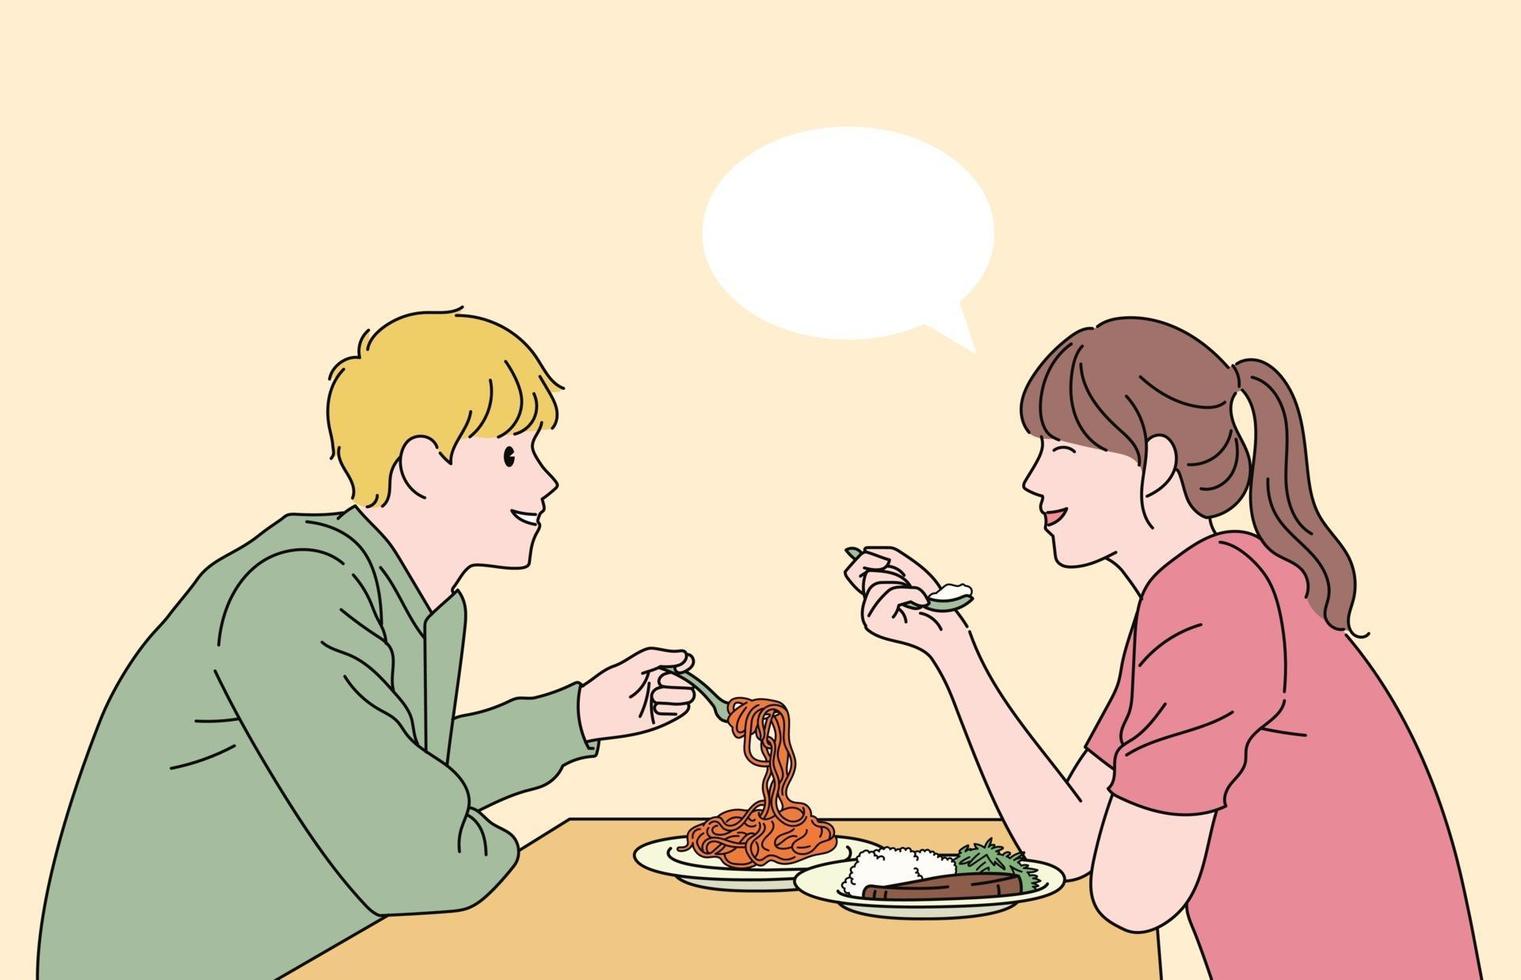 mannen och kvinnan pratar och äter. handritade stilvektordesignillustrationer. vektor